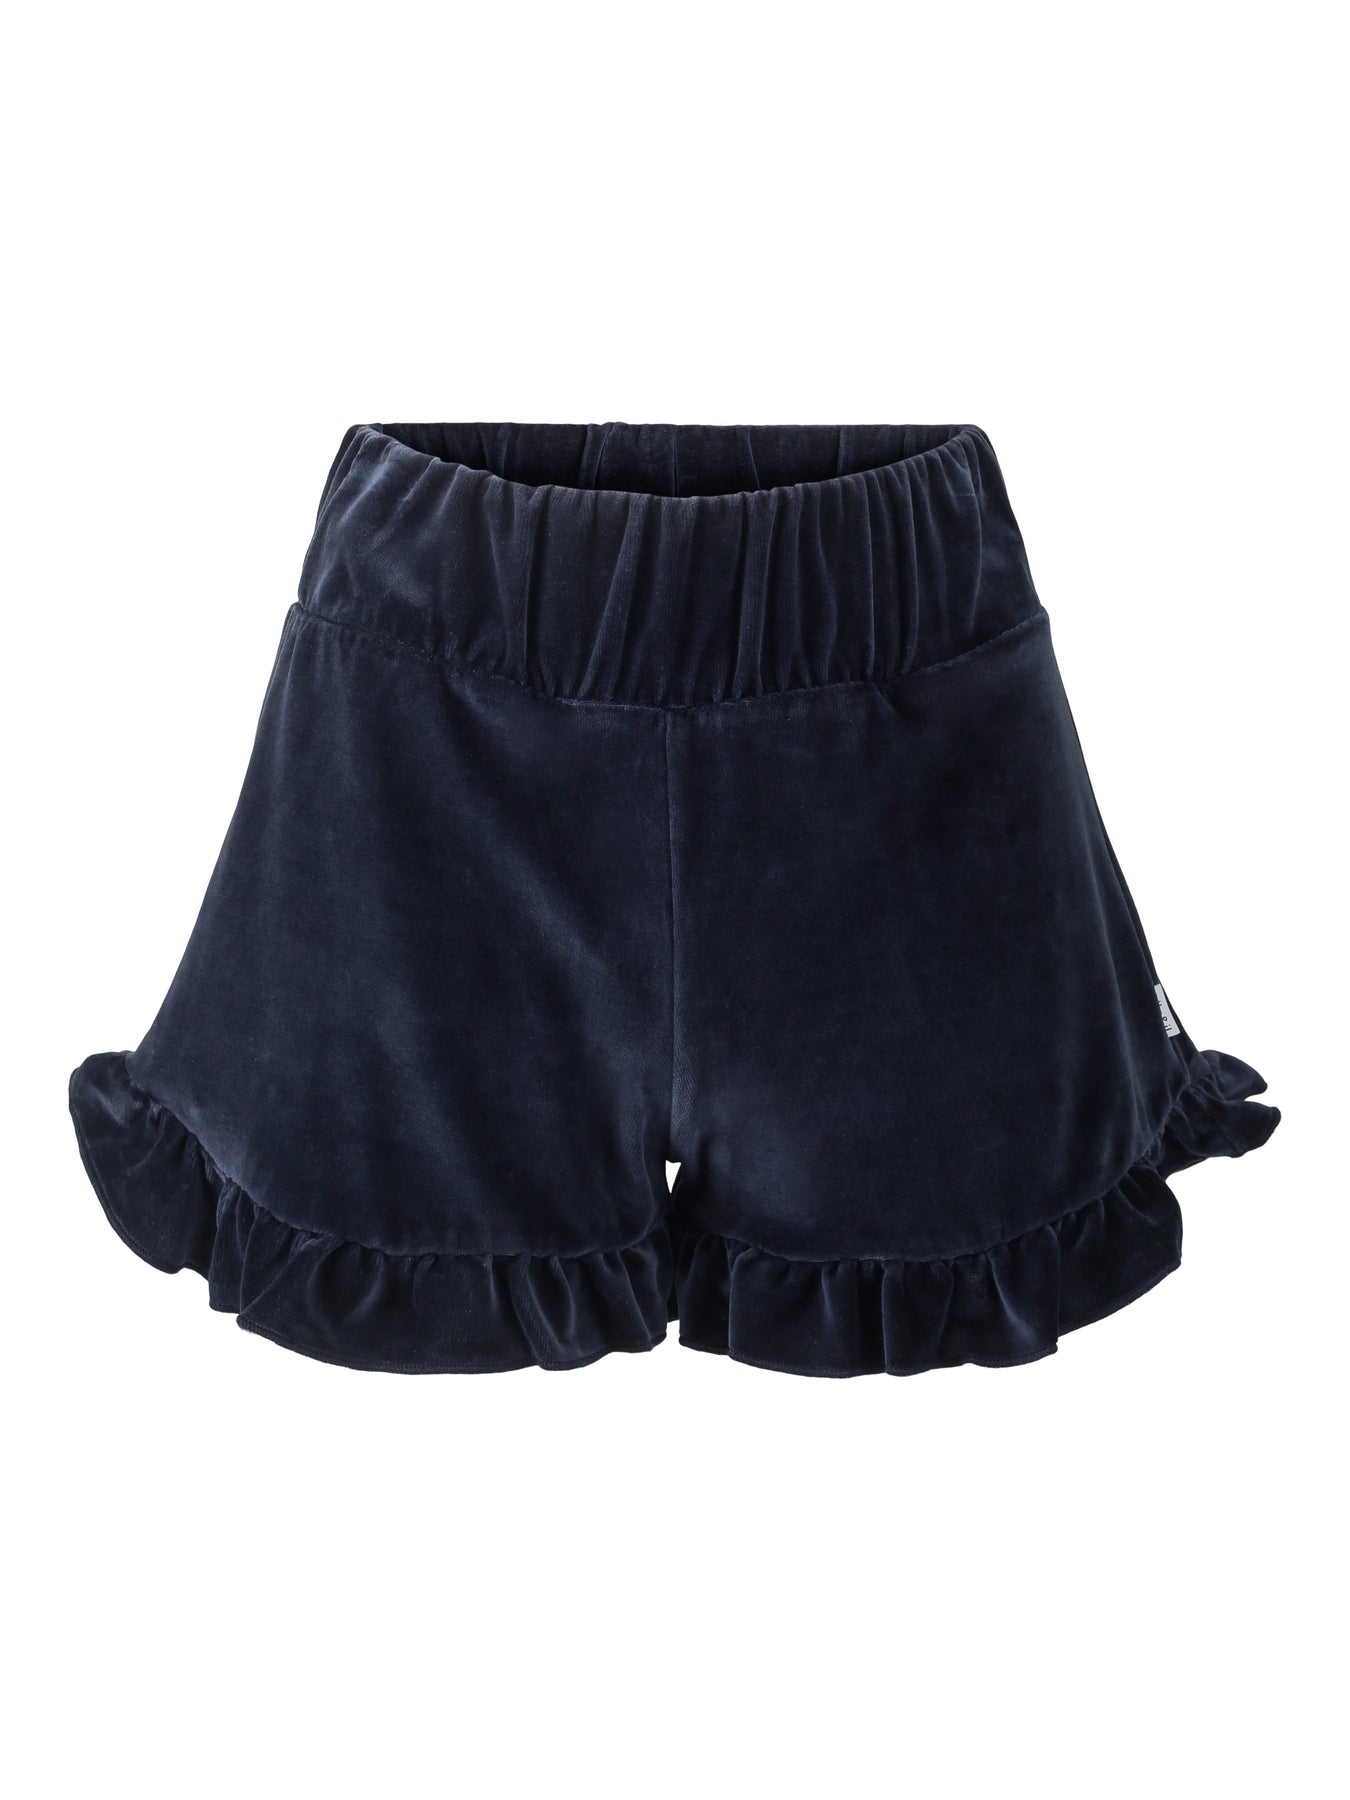 Hay Velour Shorts - Navy